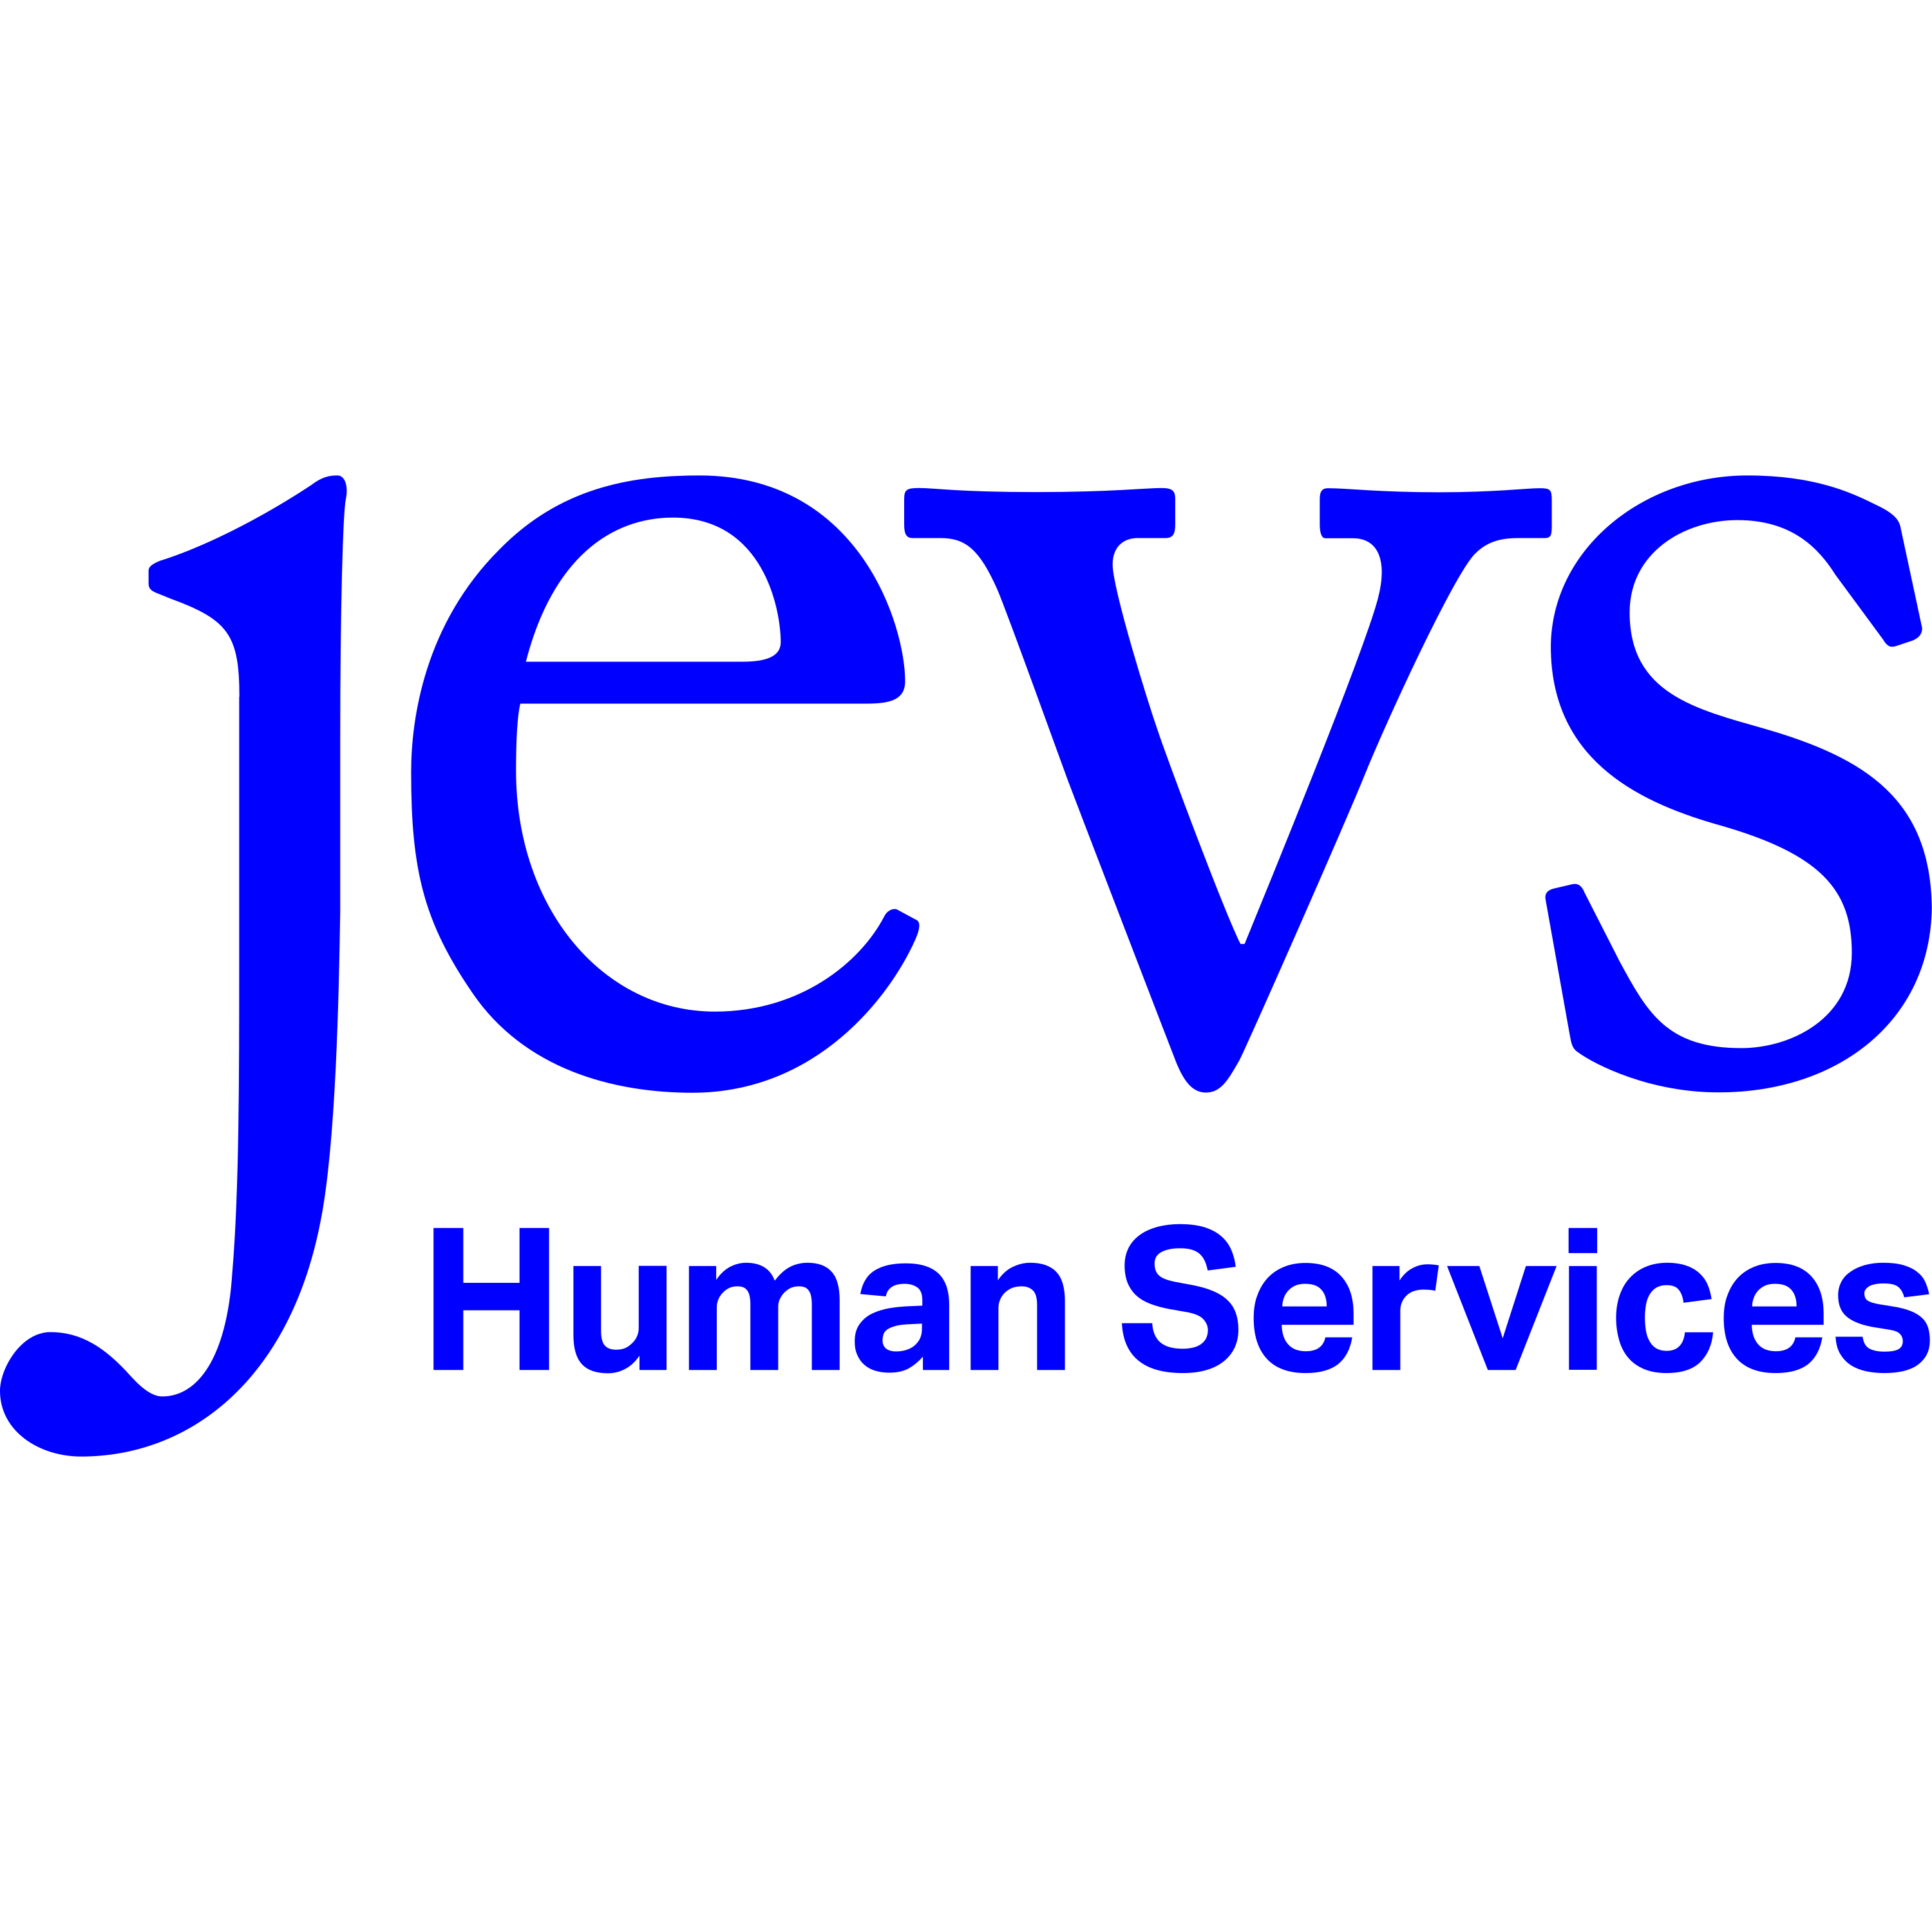 Jevs Human Services Logo Transparent Picture